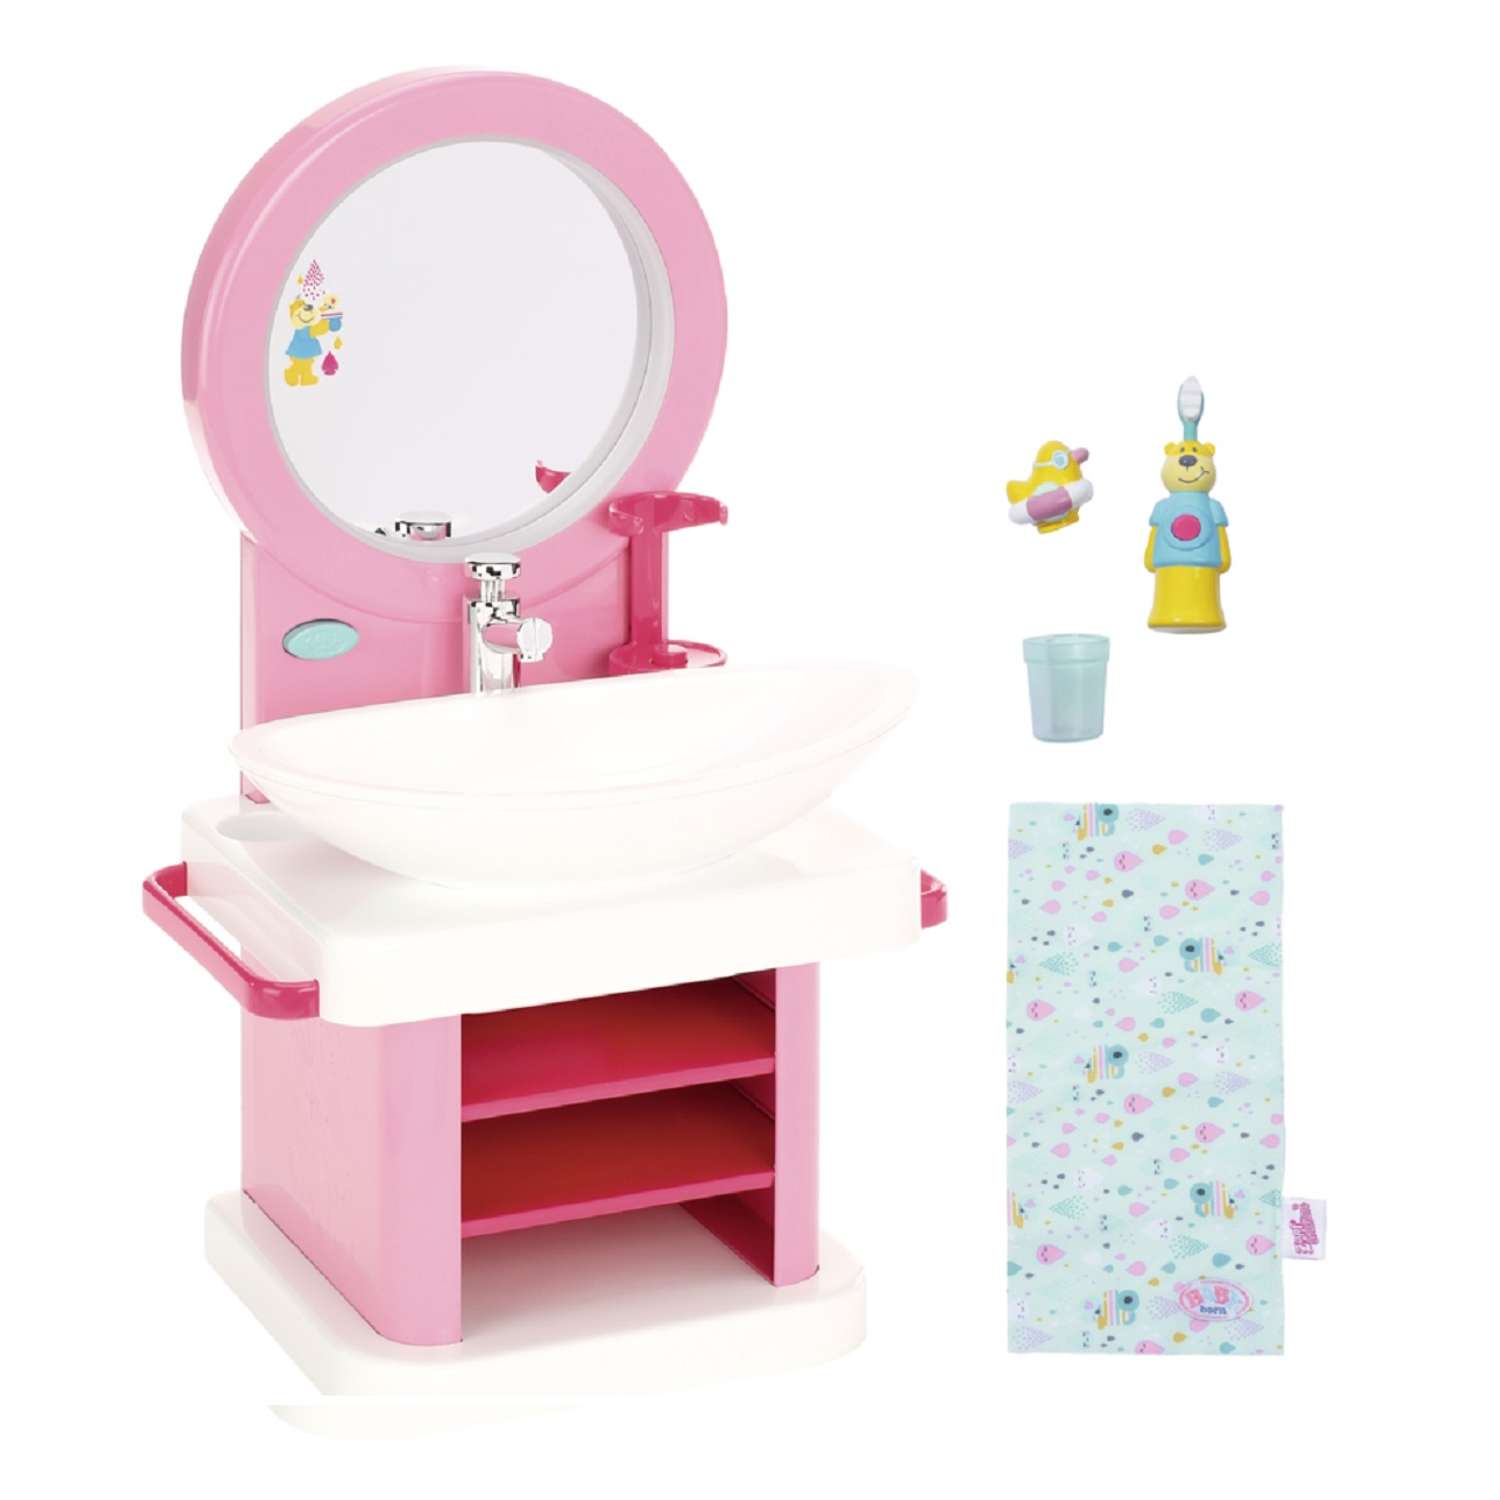 Шкаф для Кукол Baby Born — купить в интернет-магазине OZON по выгодной цене